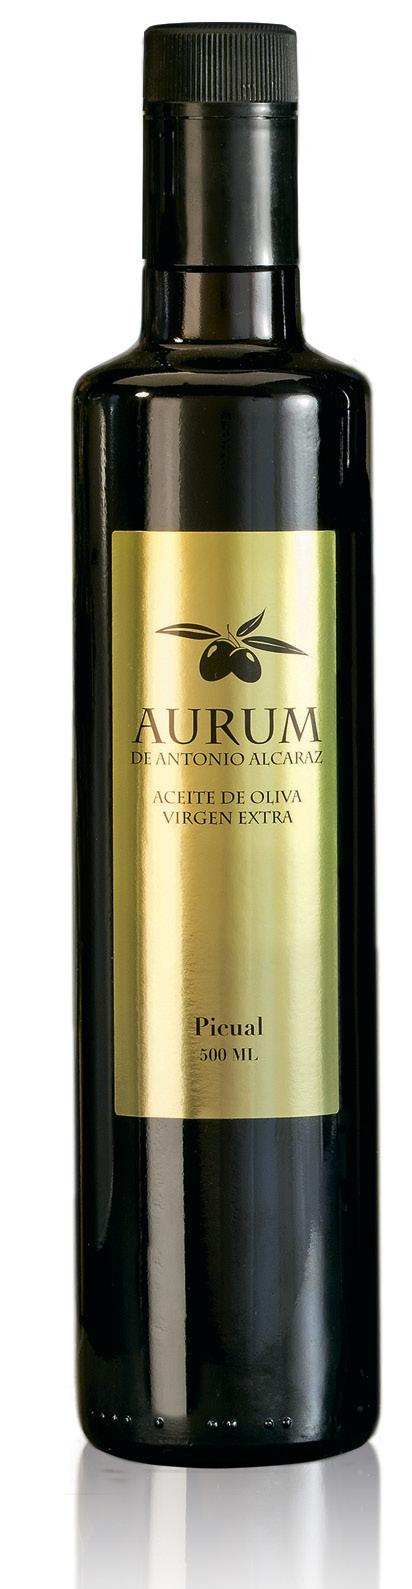 Aurum de Antonio Alcaraz Aceite de oliva